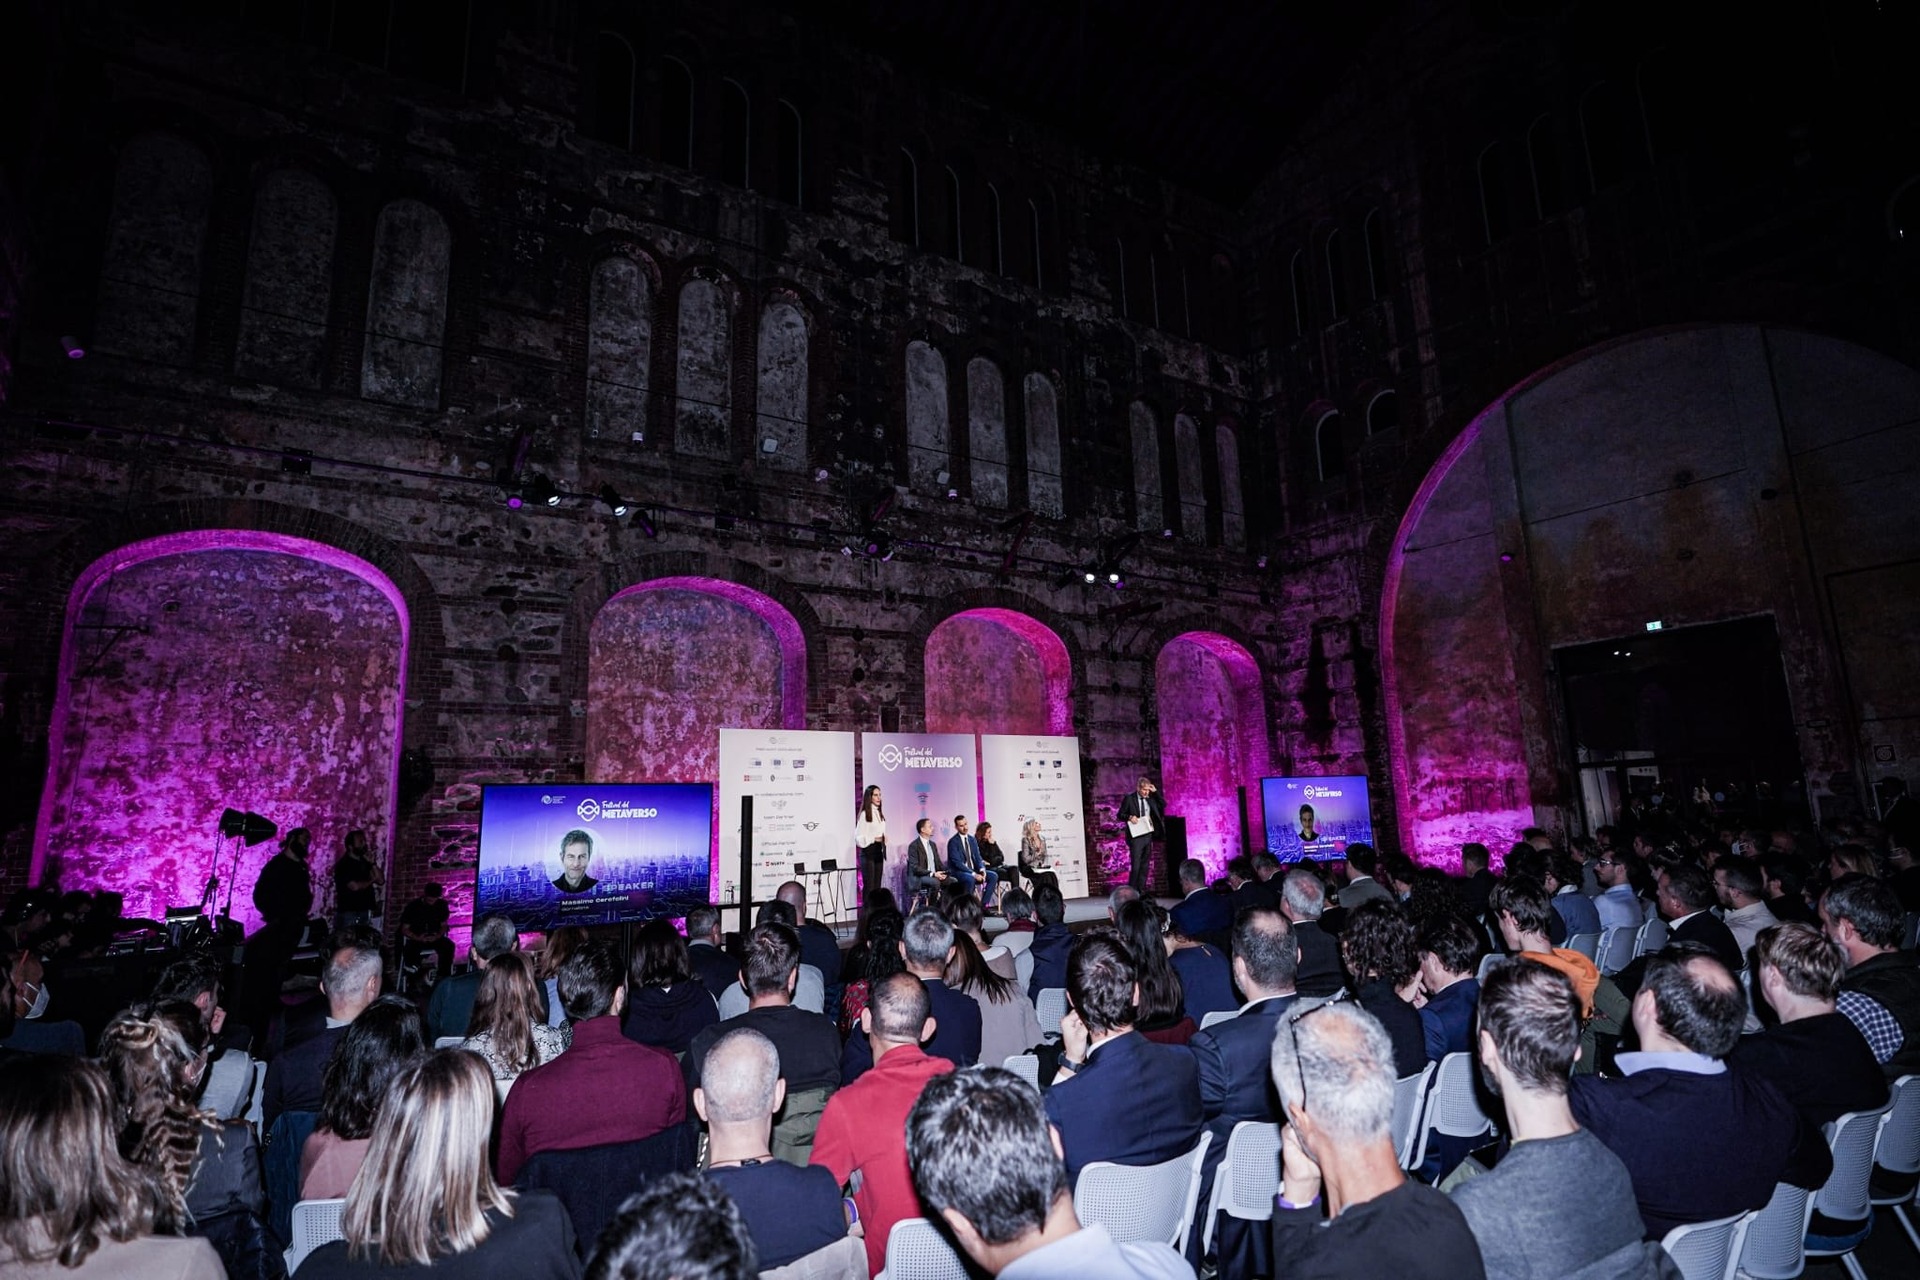 Prvo izdanje Metaverse festivala 14. oktobra 2022. u OGR-u u Torinu